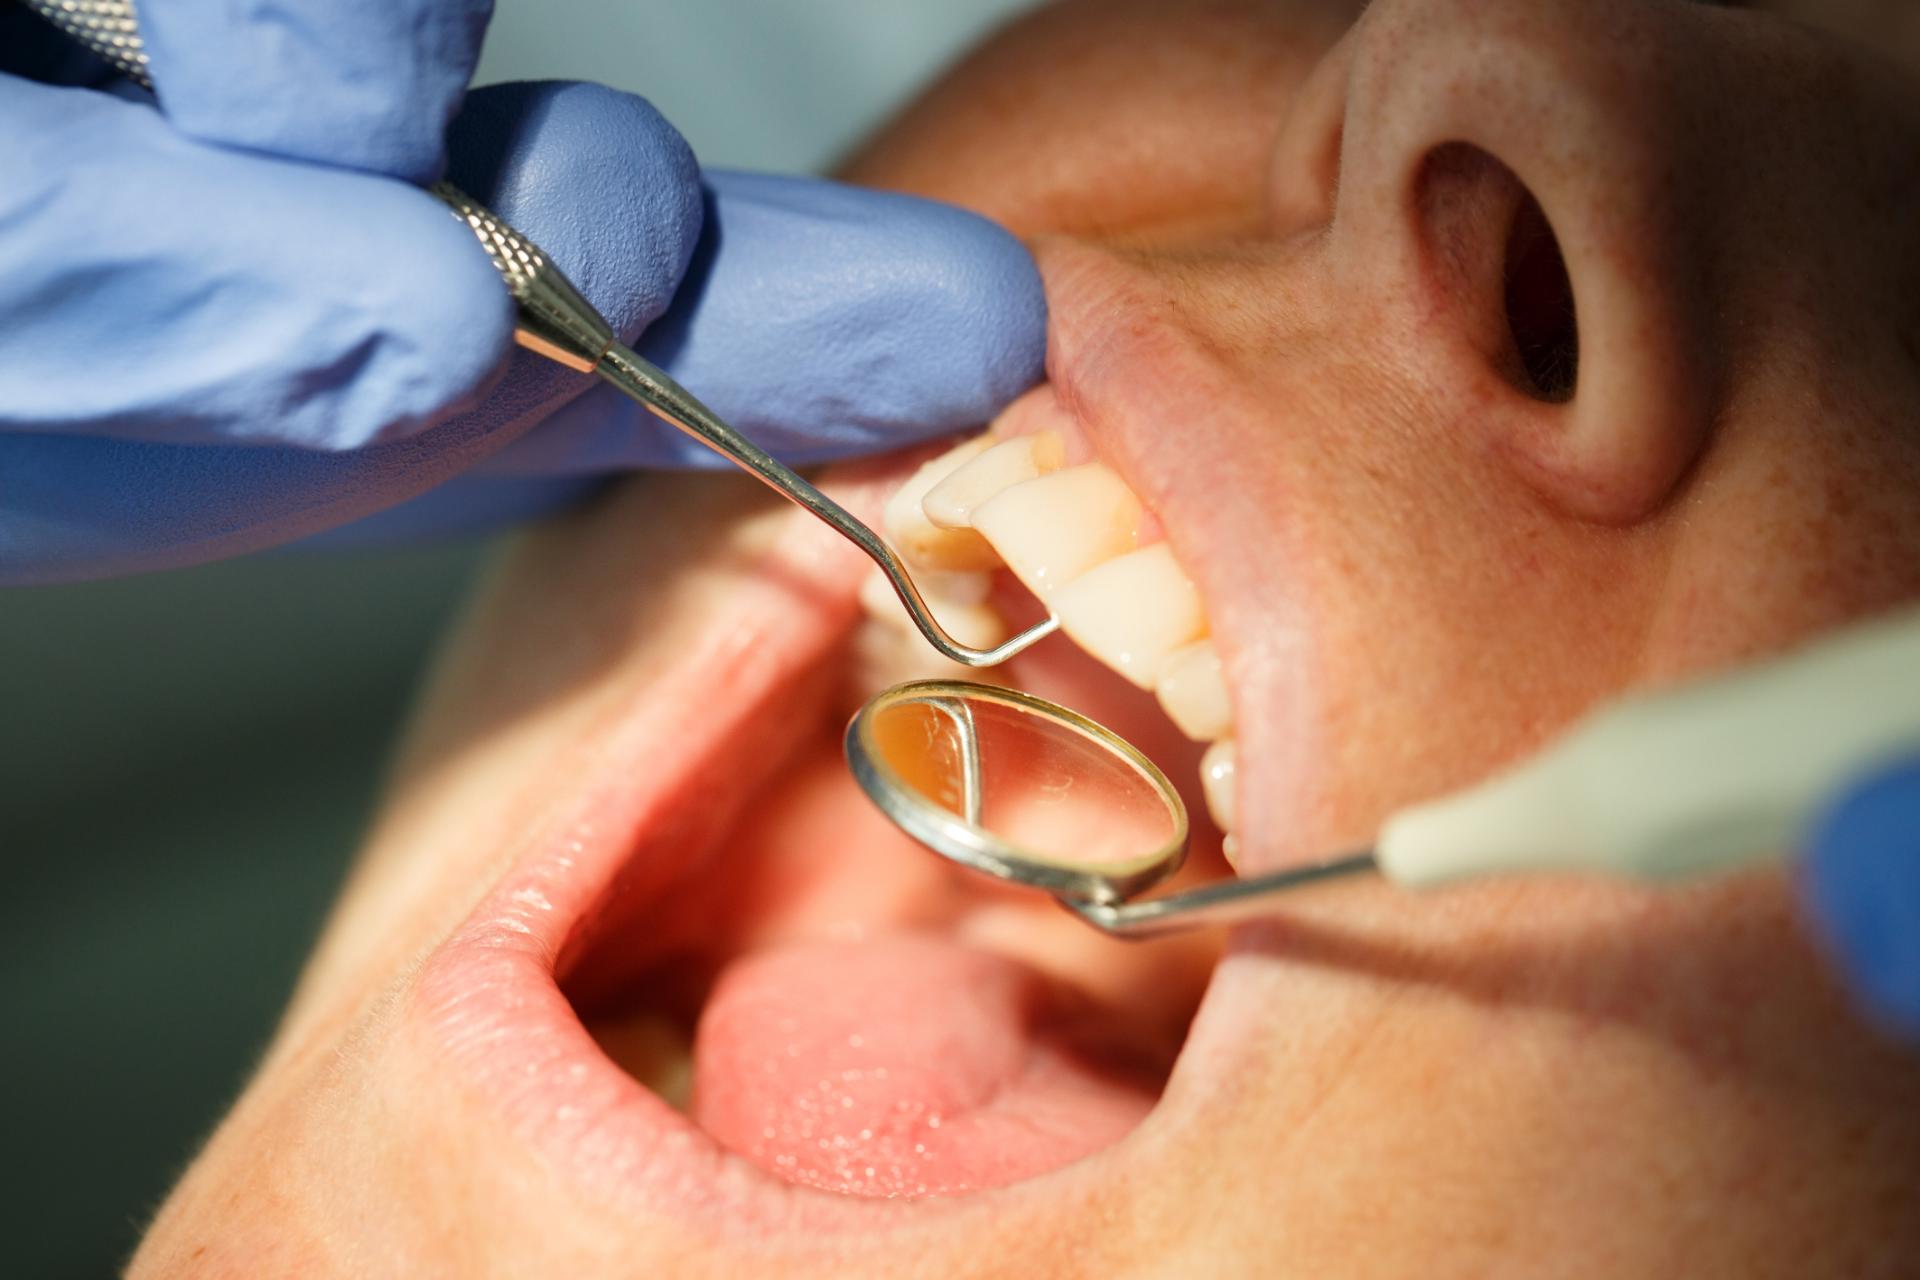 Boca abierta siendo revisada pro el dentista